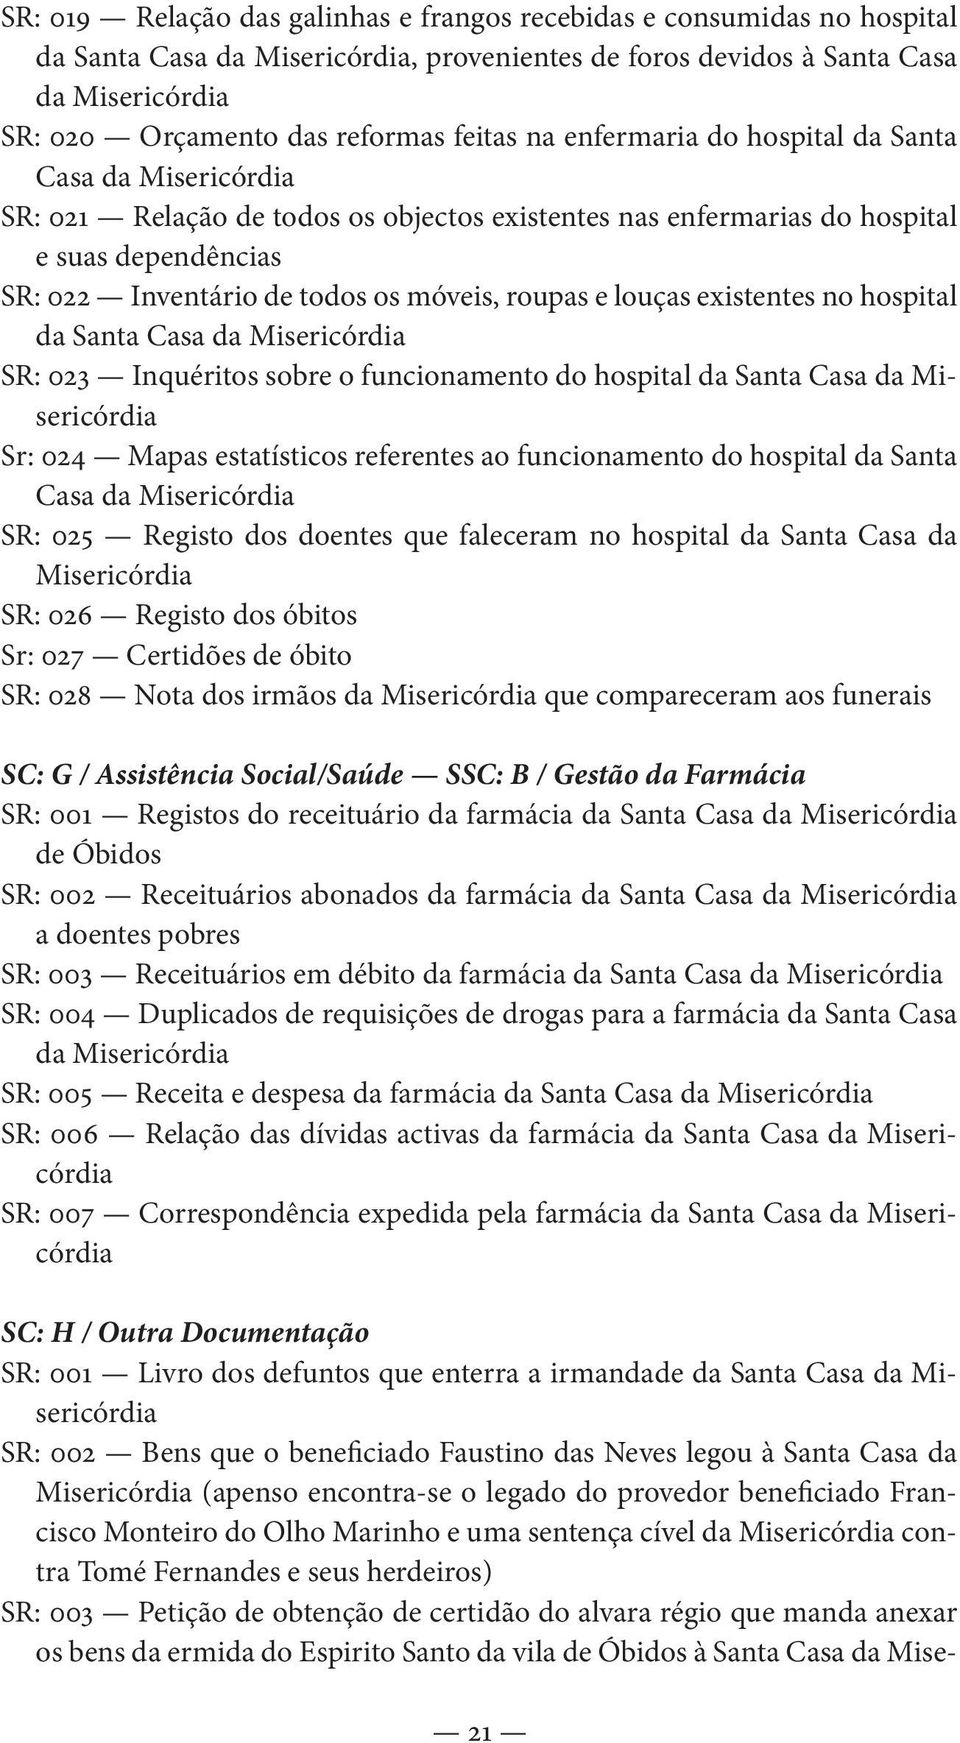 roupas e louças existentes no hospital da Santa Casa da Misericórdia SR: 023 Inquéritos sobre o funcionamento do hospital da Santa Casa da Misericórdia Sr: 024 Mapas estatísticos referentes ao